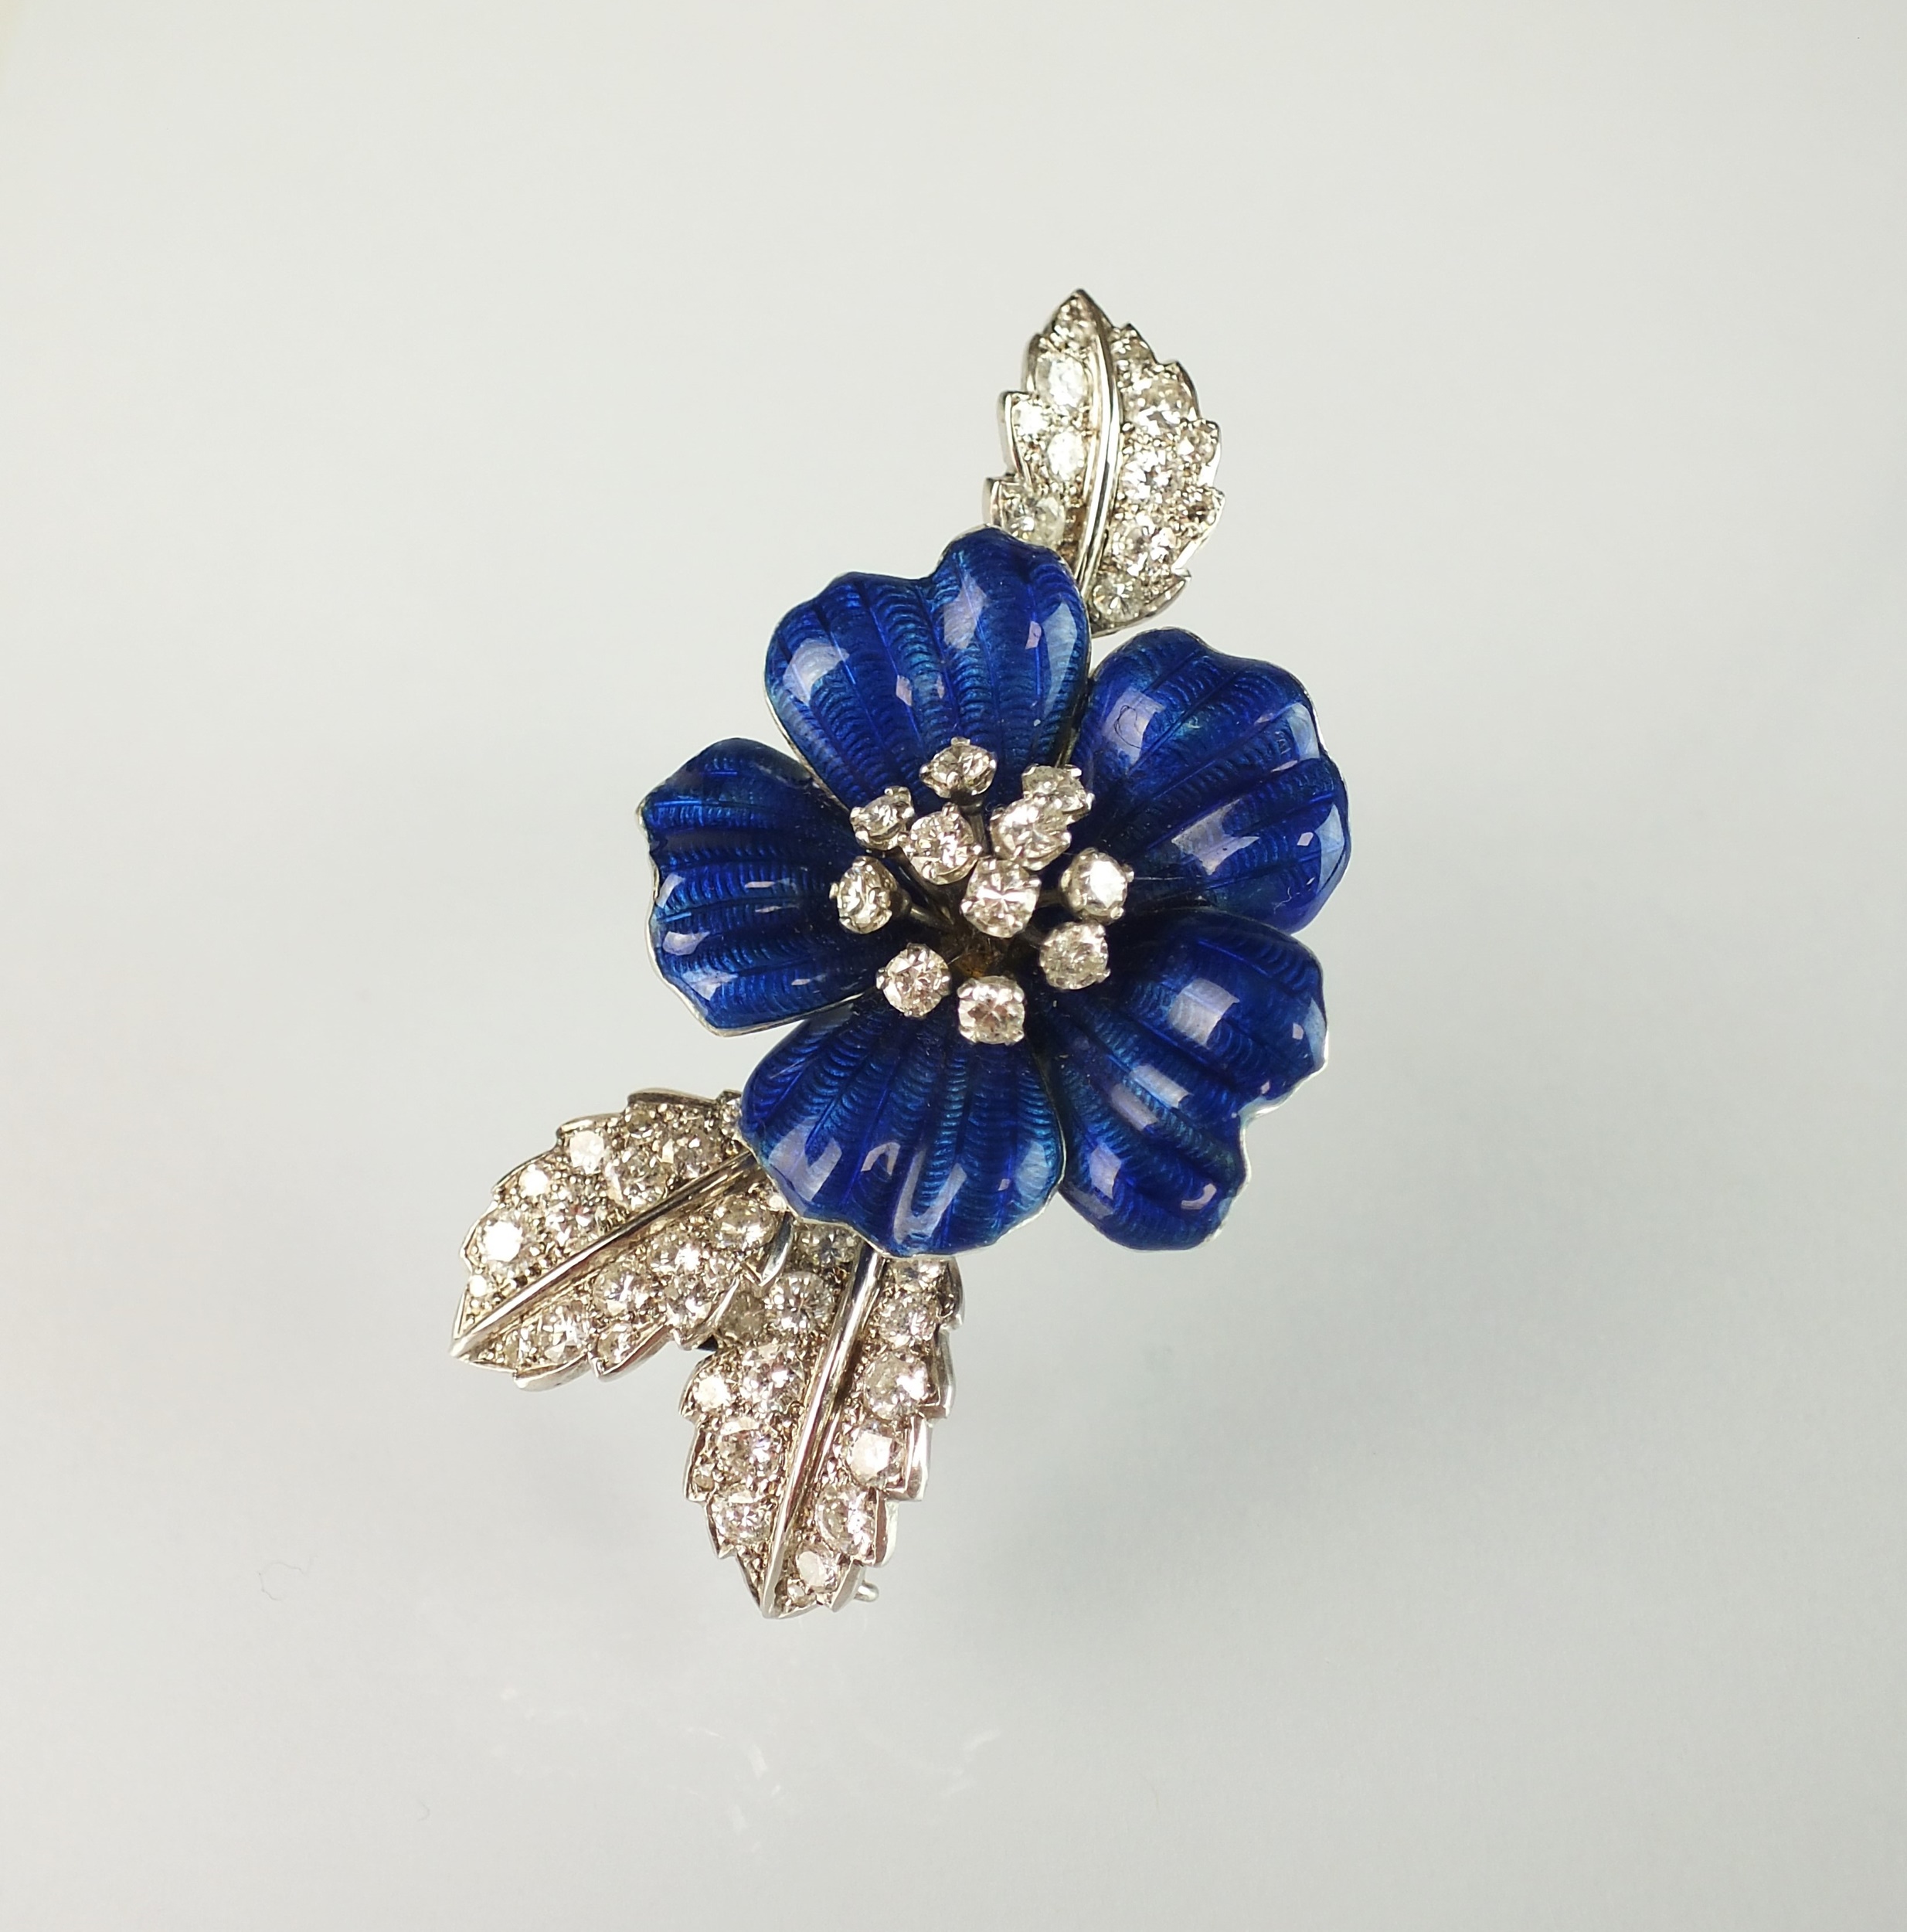 Lot 34 16/06/2021- A diamond and blue enamel flower brooch by Boucheron